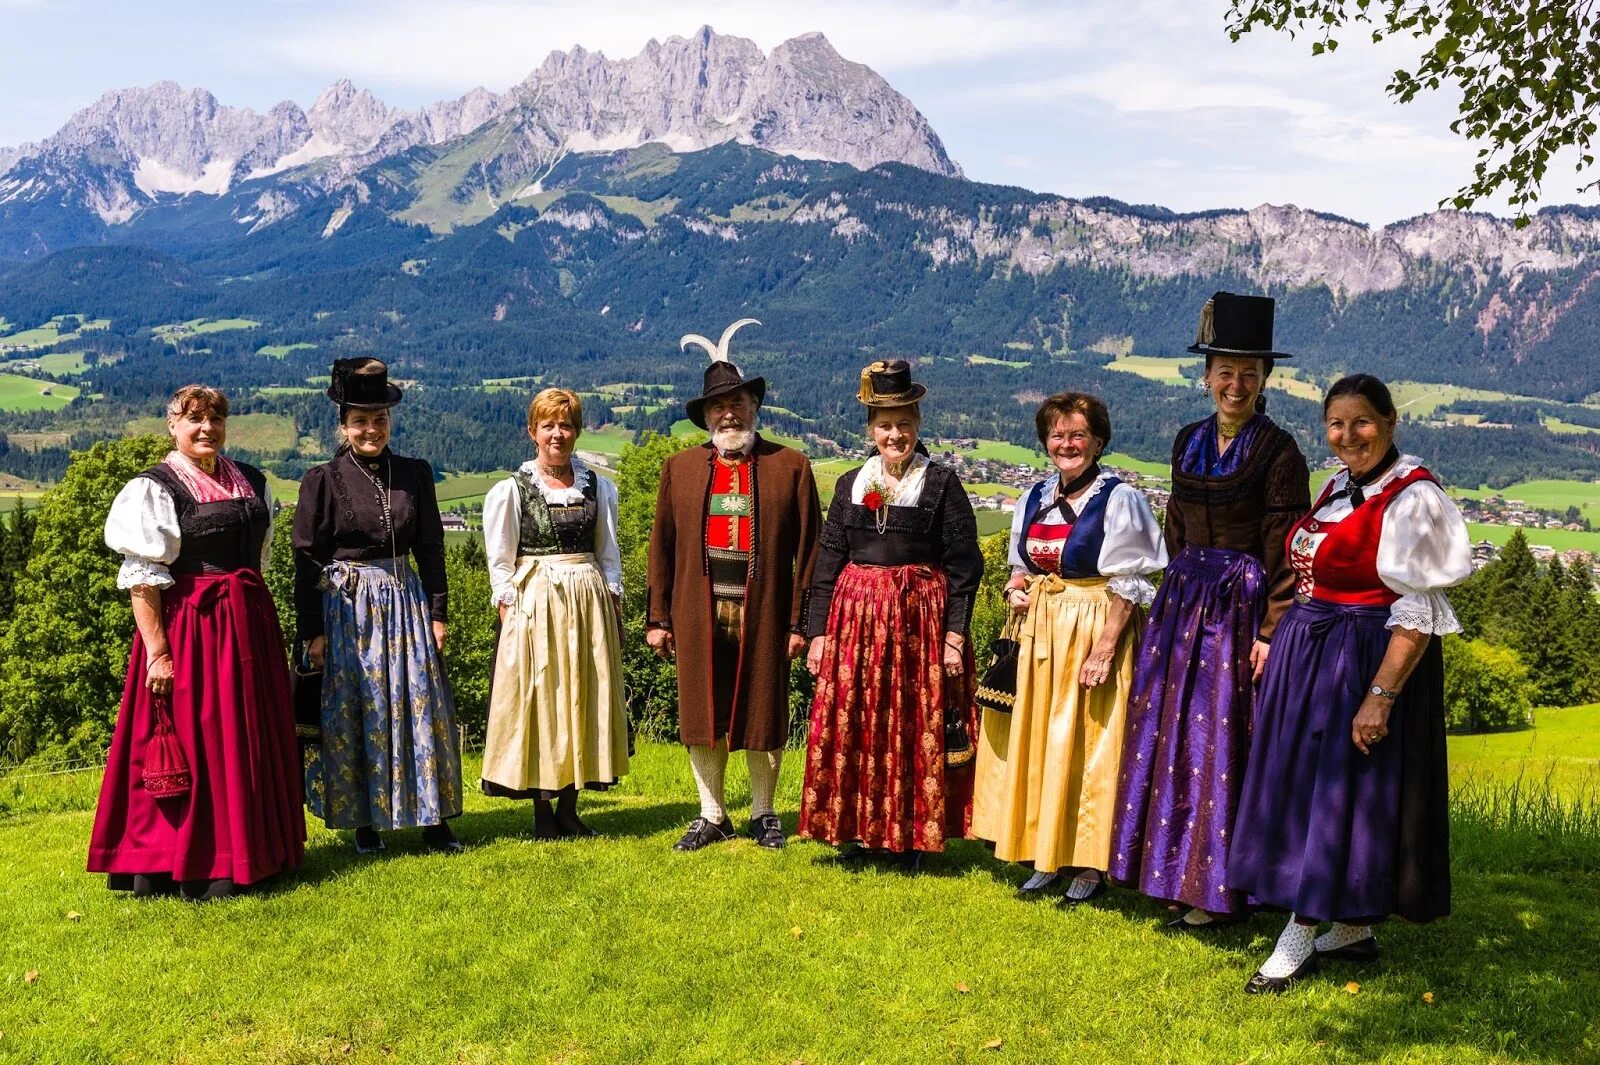 Национальная одежда страны. Национальный костюм Австрии национальный костюм Австрии. Лихтенштейн национальный костюм. Национальный костюм Швейцарии. Тироль национальный костюм.